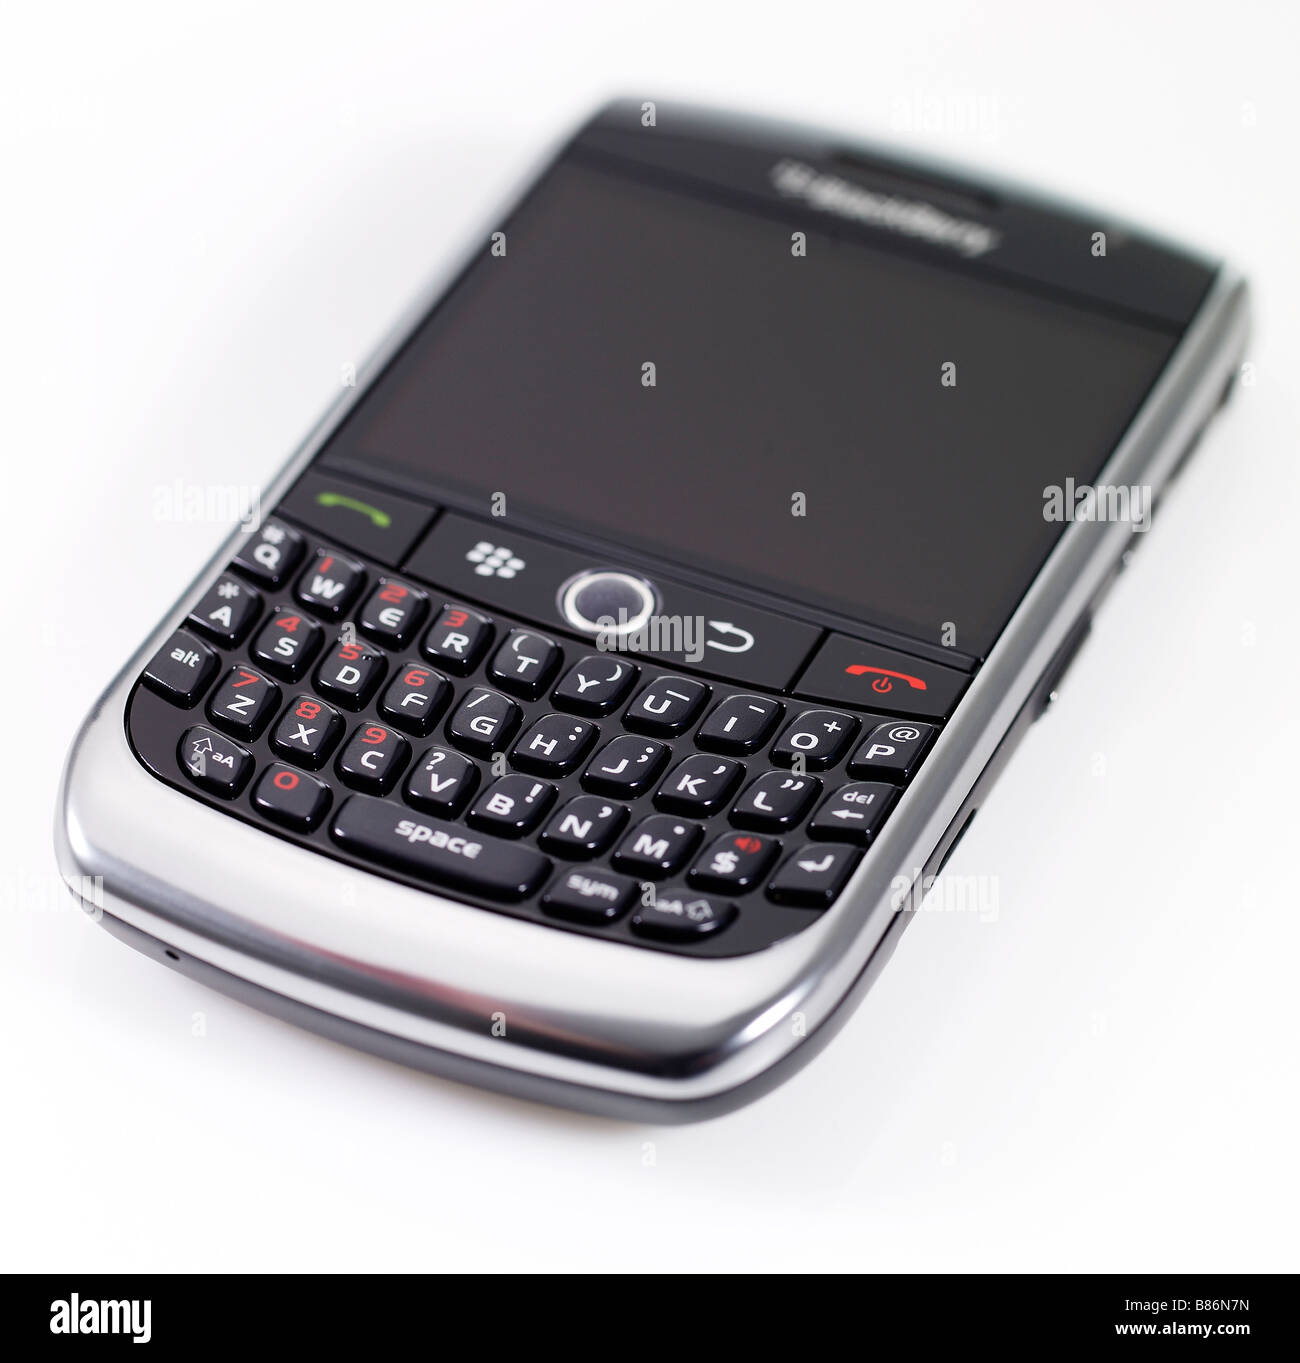 Foto de estudio de un teléfono Blackberry 8900 sobre un fondo blanco. Foto de stock